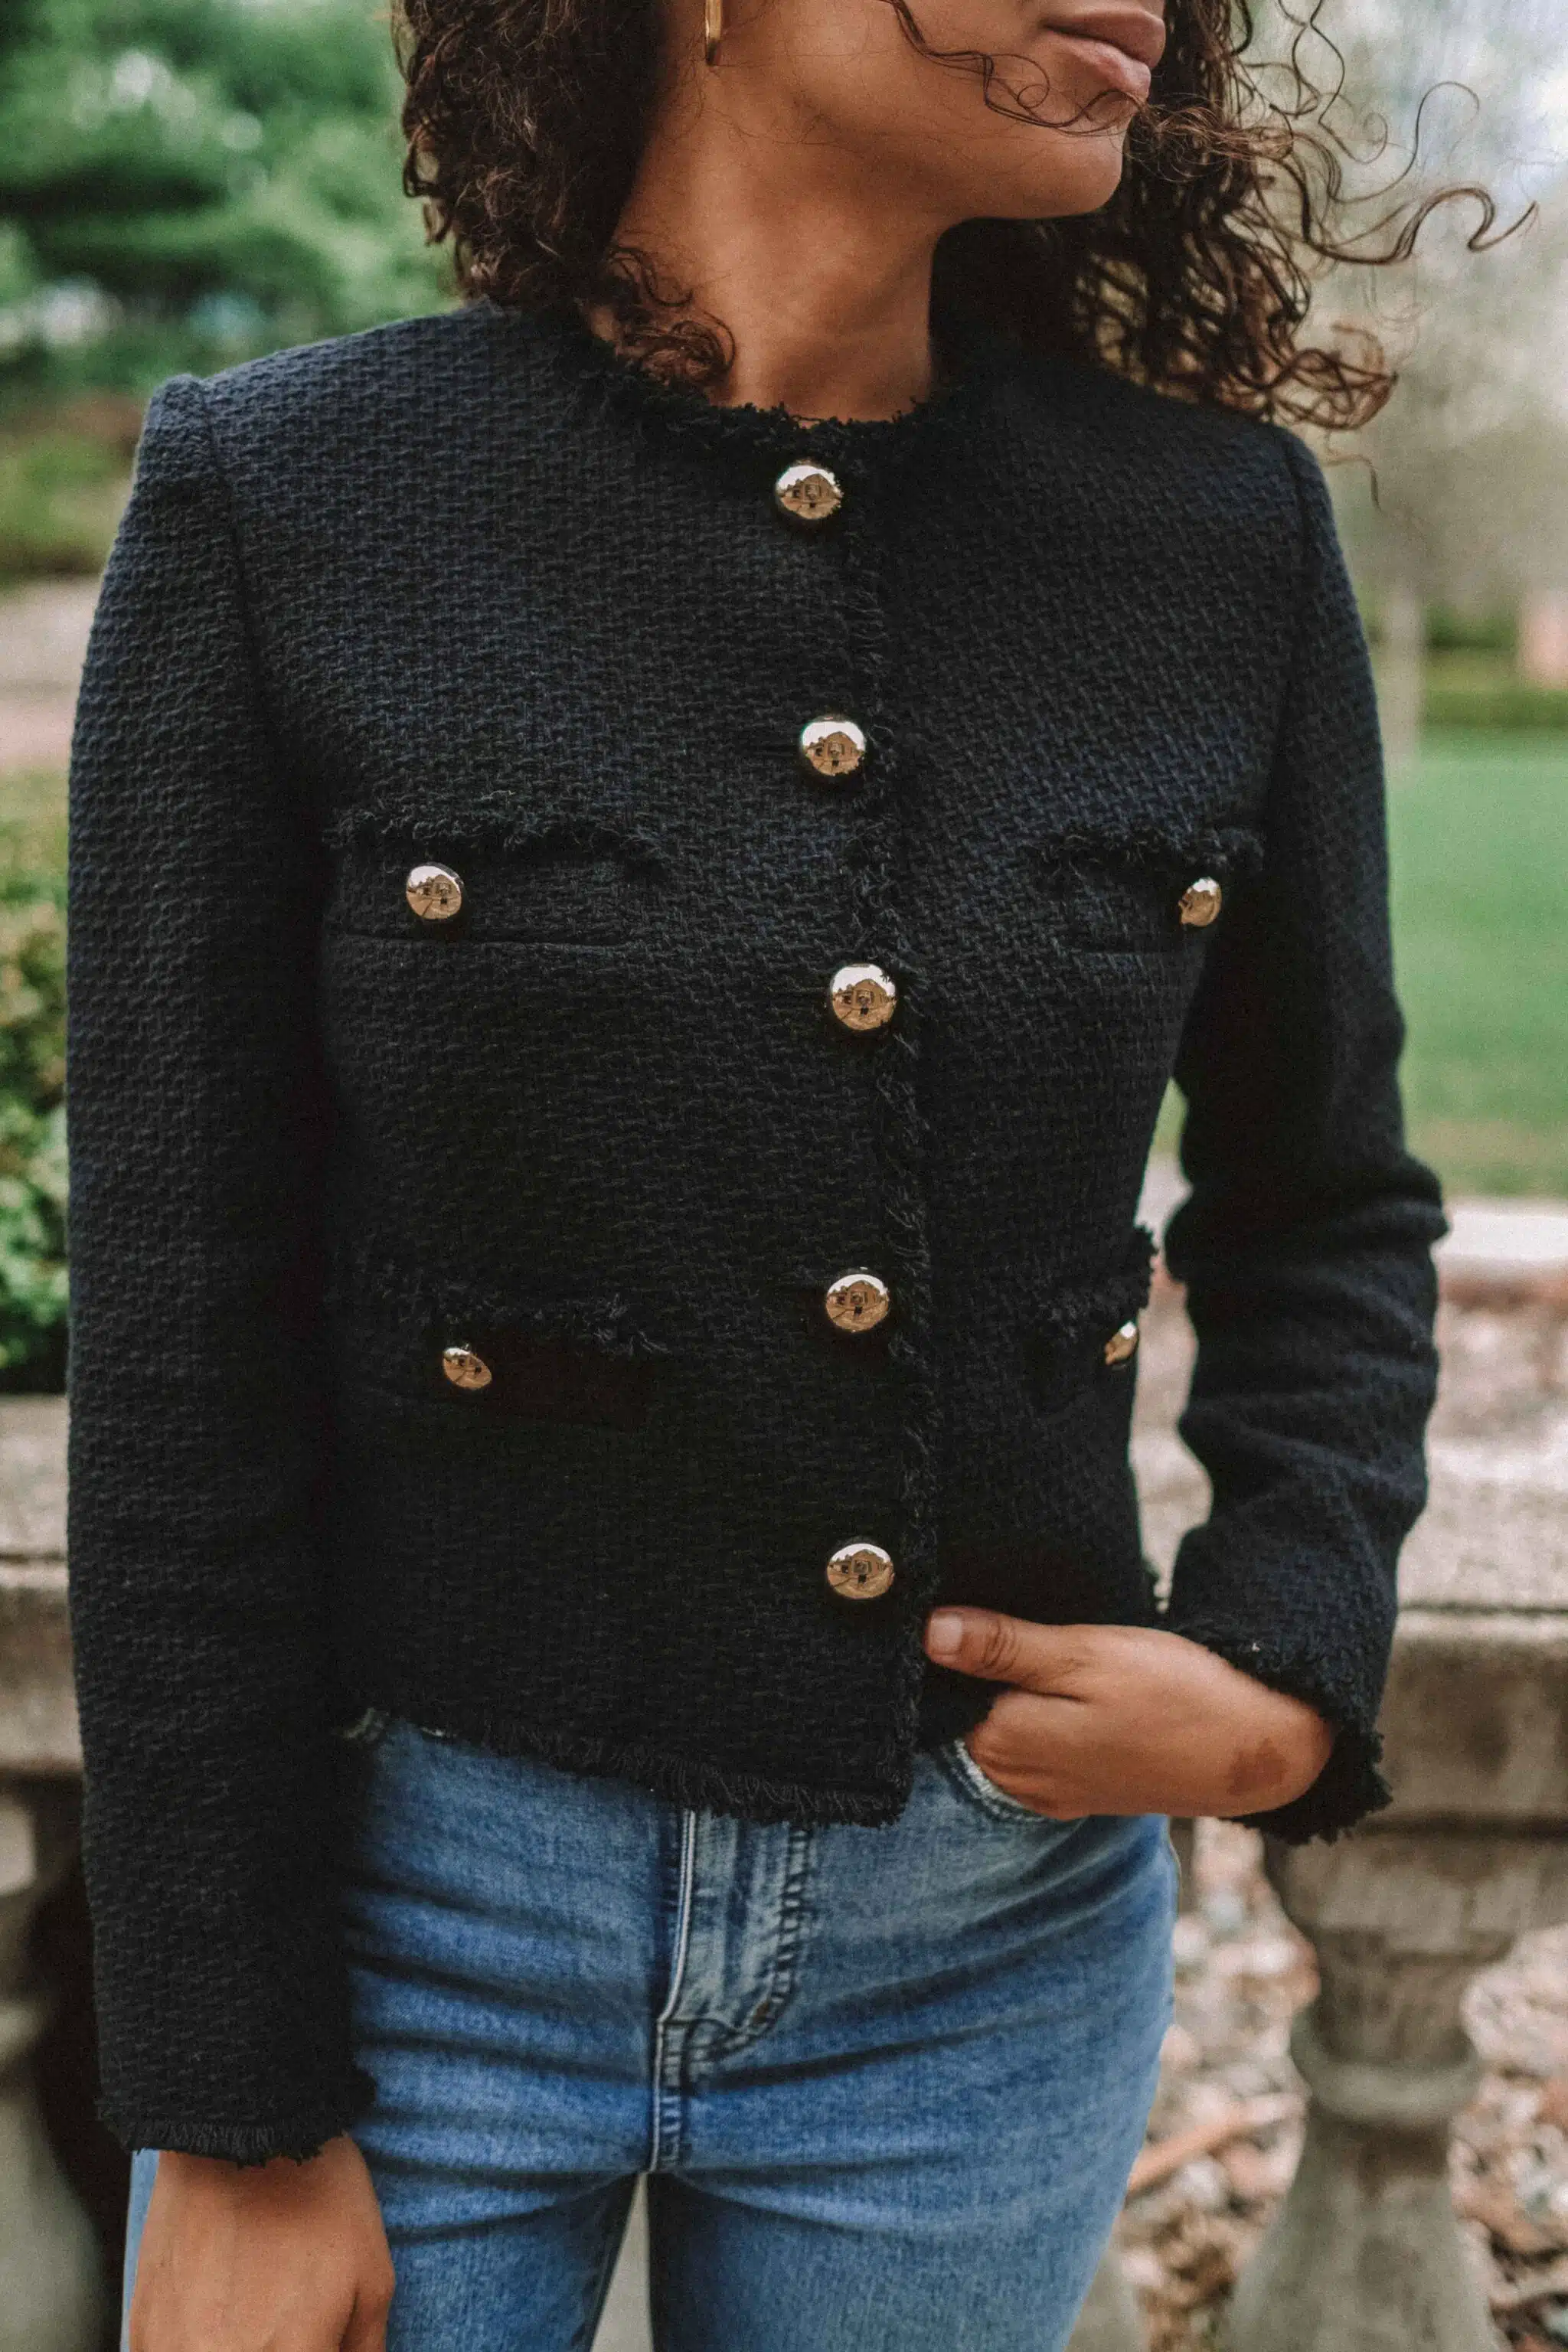 black tweed lady jacket and jeans